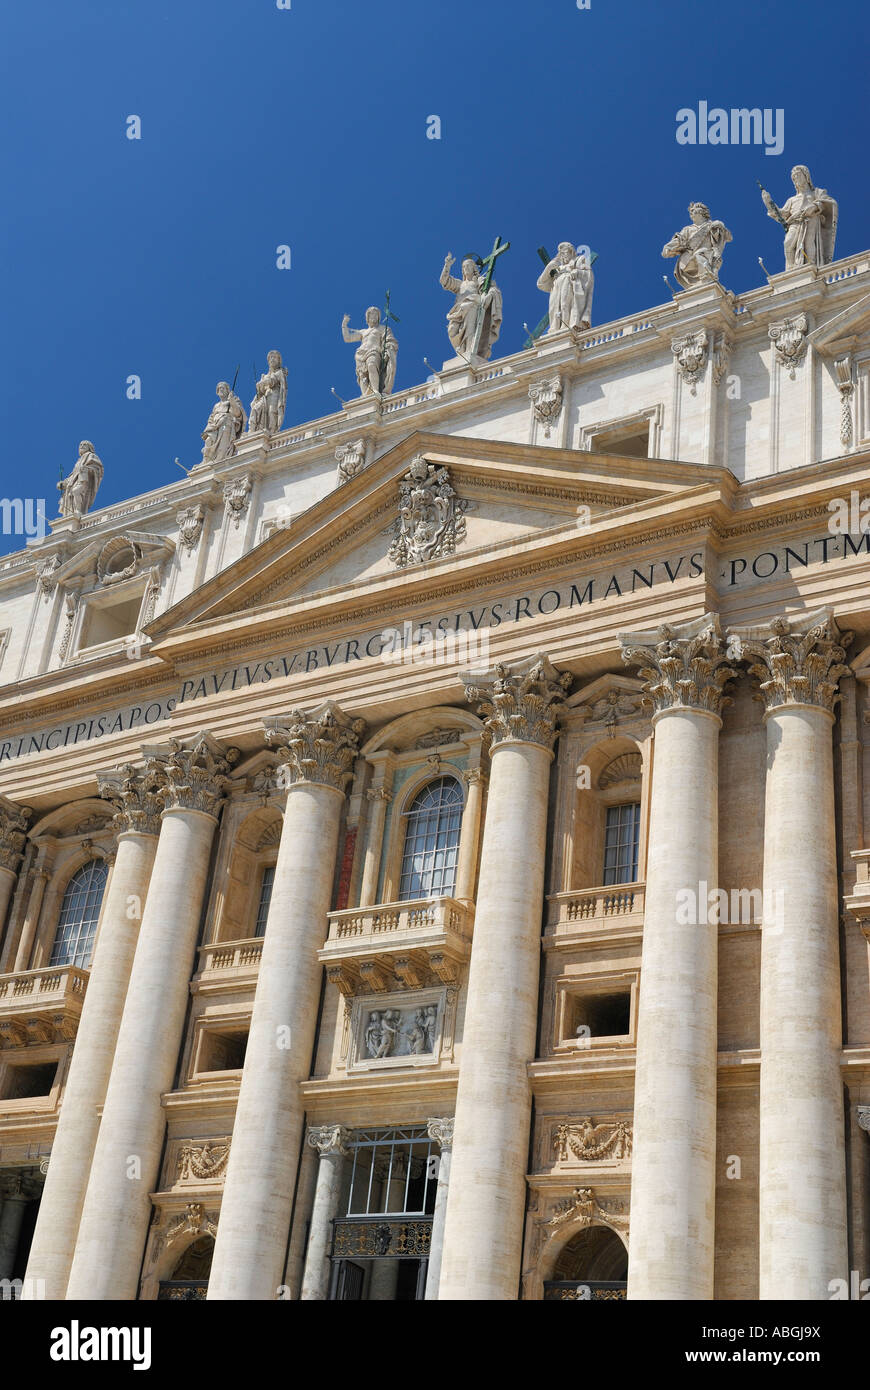 Vertikale Details der Säulen und Statuen Eingangsfassade der päpstlichen Basilika St. Peters römisch-katholische Kathedrale im Vatikan in Rom Italien Stockfoto